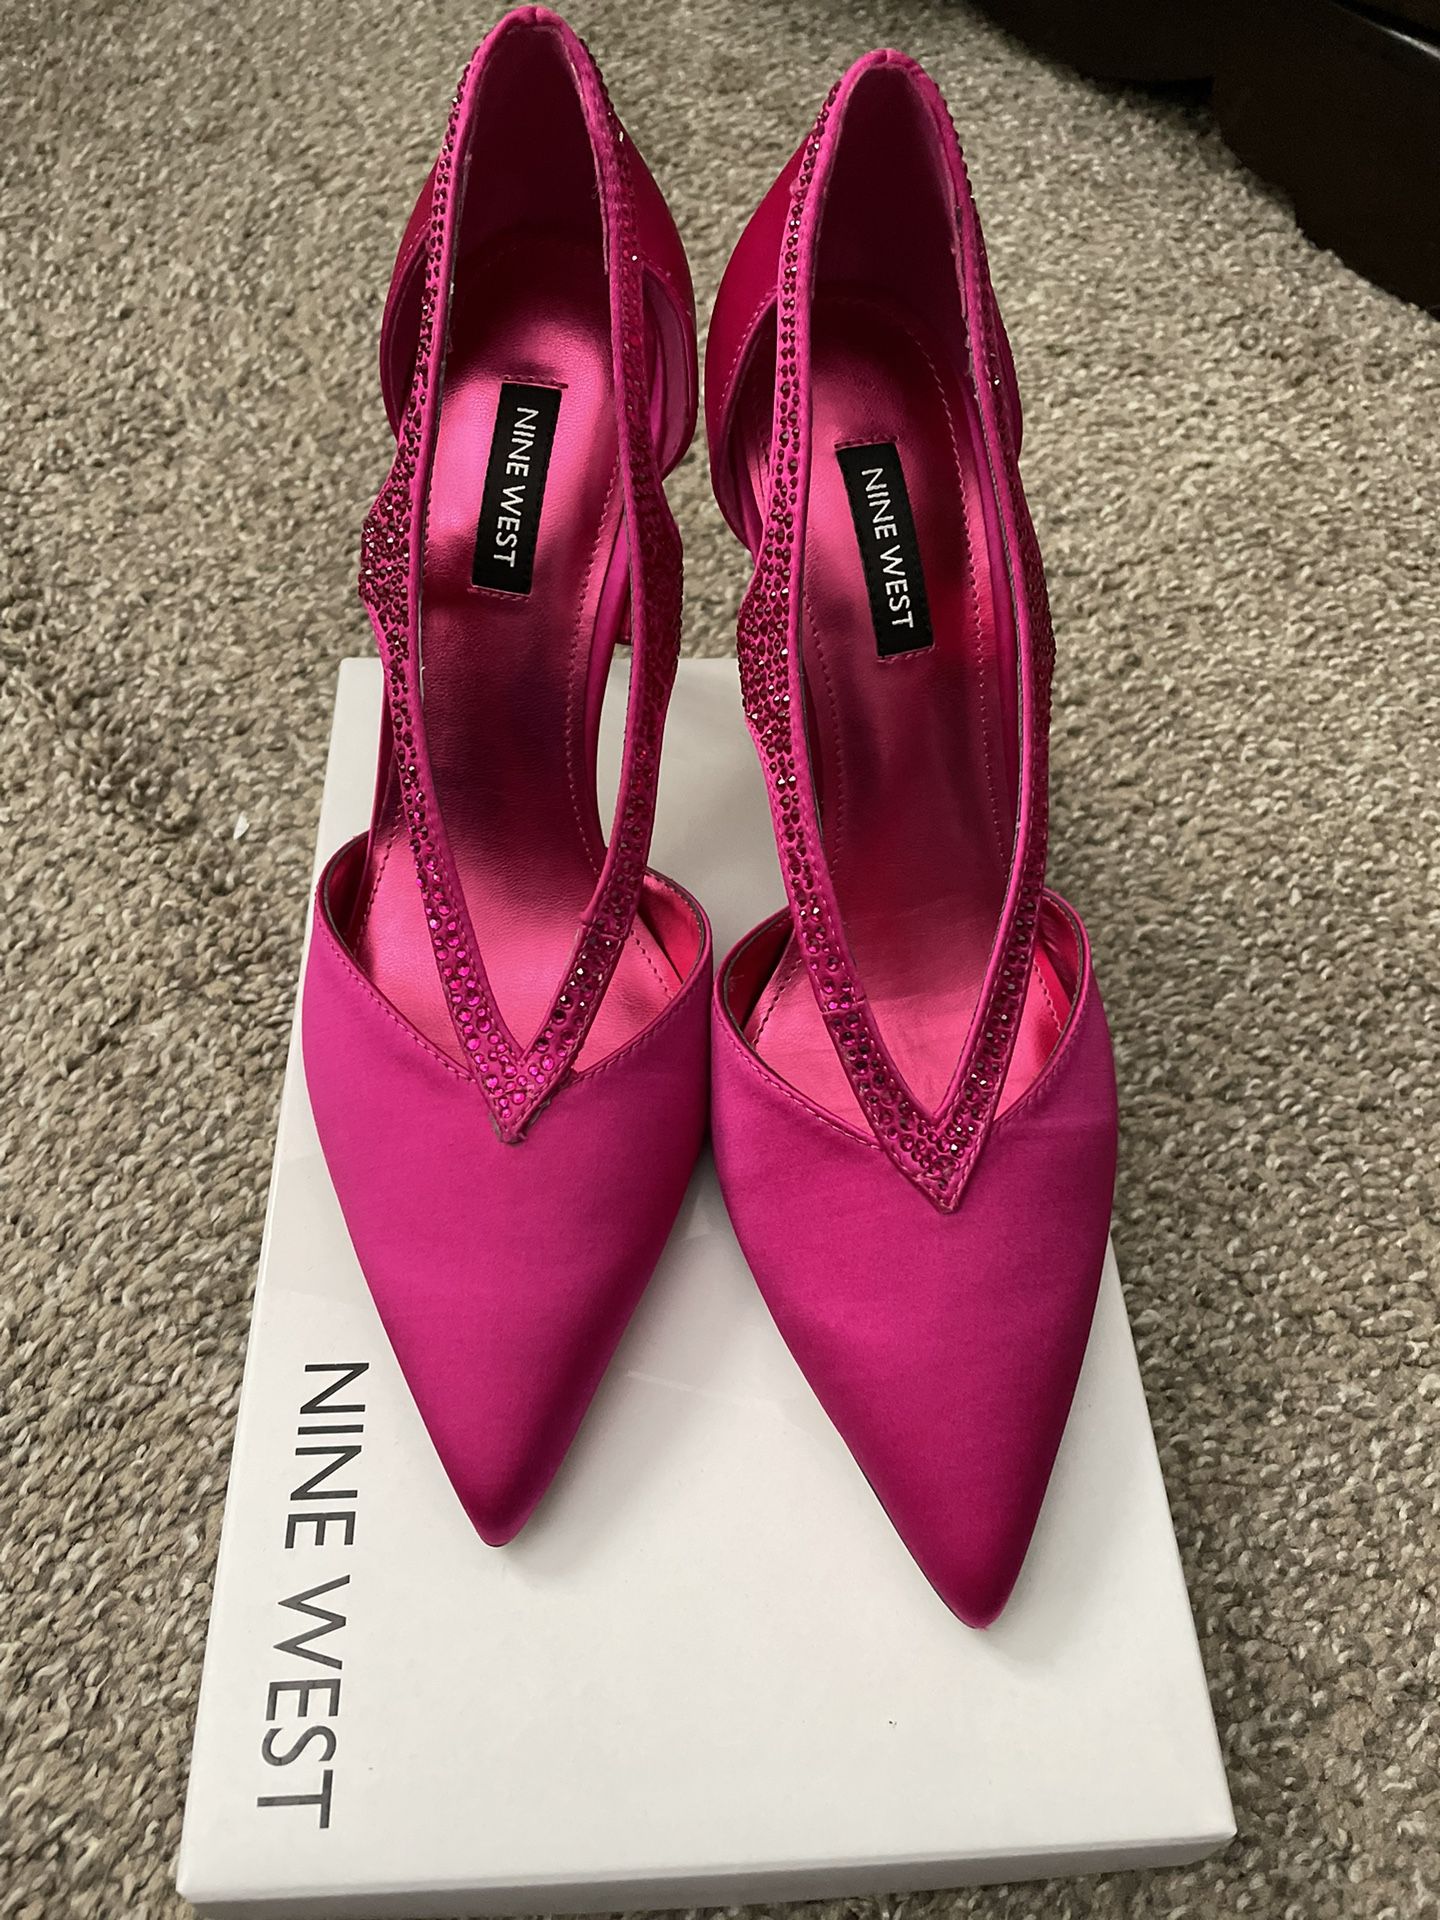 Nine West 7.5 Hot Pink Heels